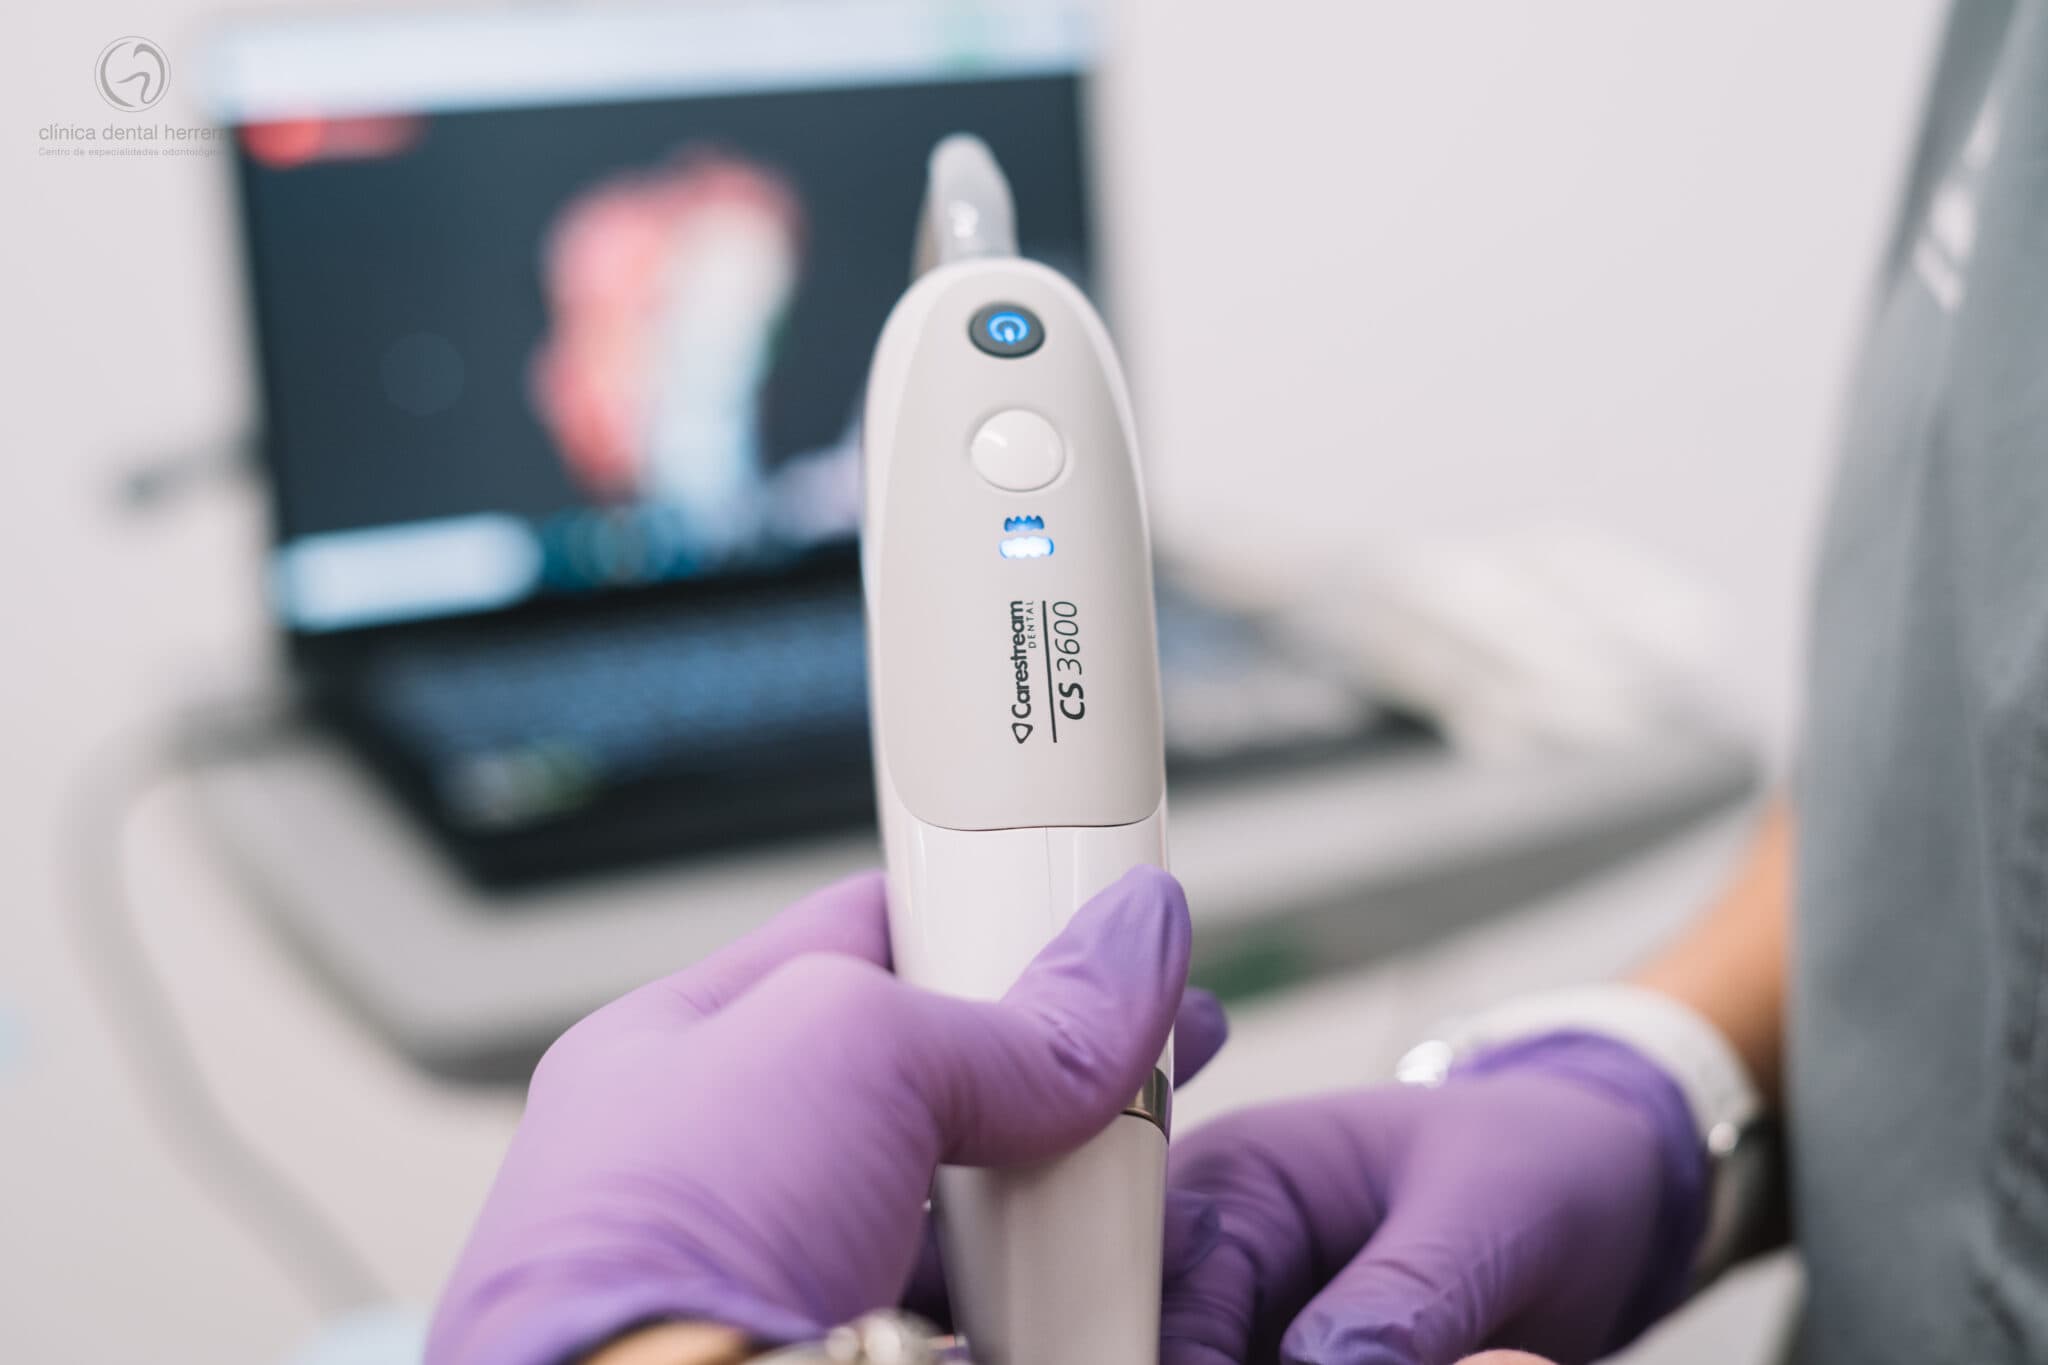 Clínica Dental Herrera perfecciona las impresiones digitales con la dotación de nuevos-escáneres intraorales